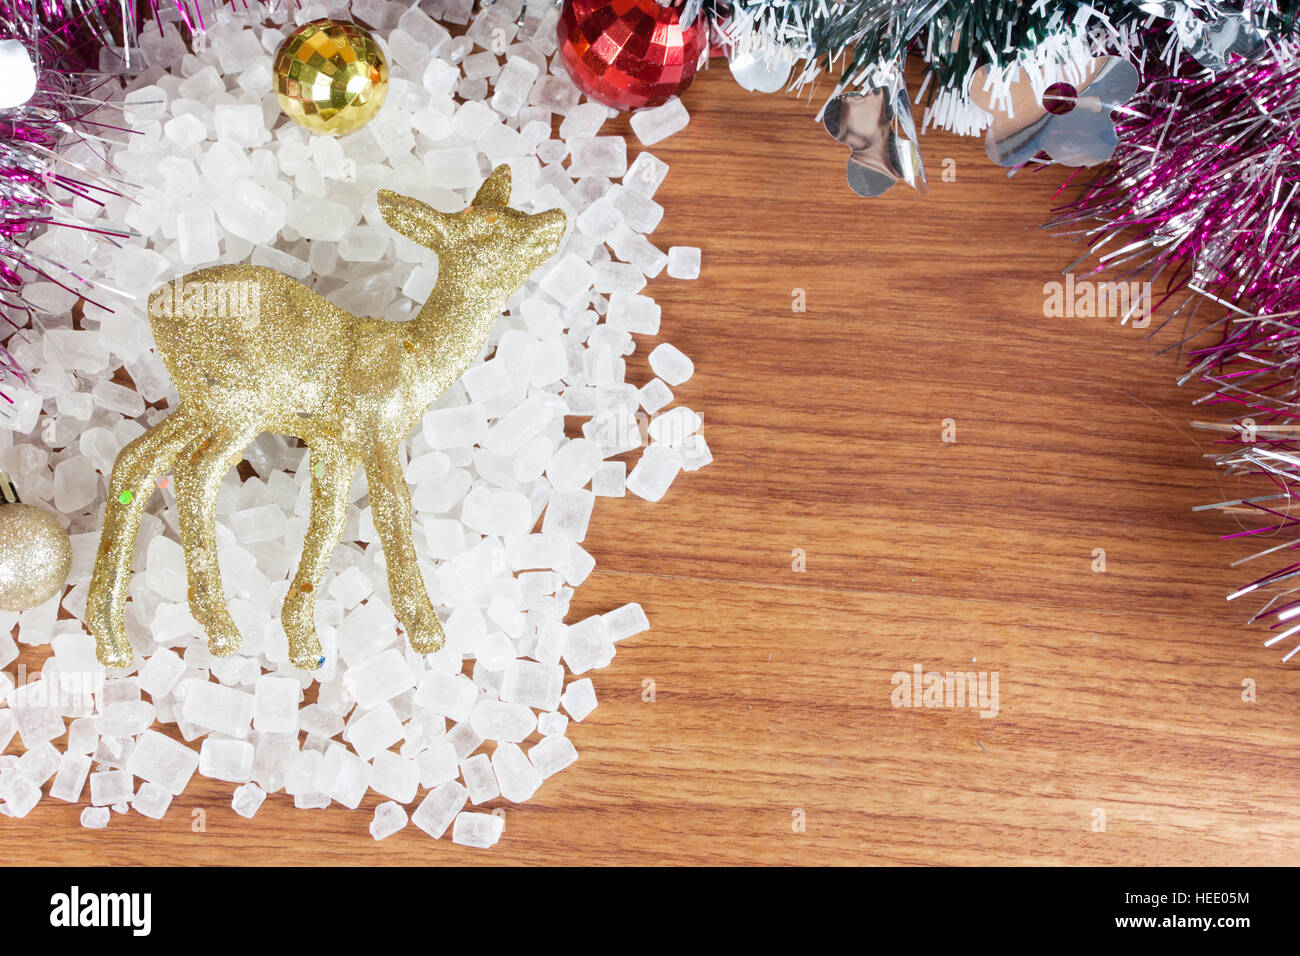 Deer couleur or sur une pile d'un cristal blanc. Boules de Noël rouge et jaune des ornements sur bois, Banque D'Images